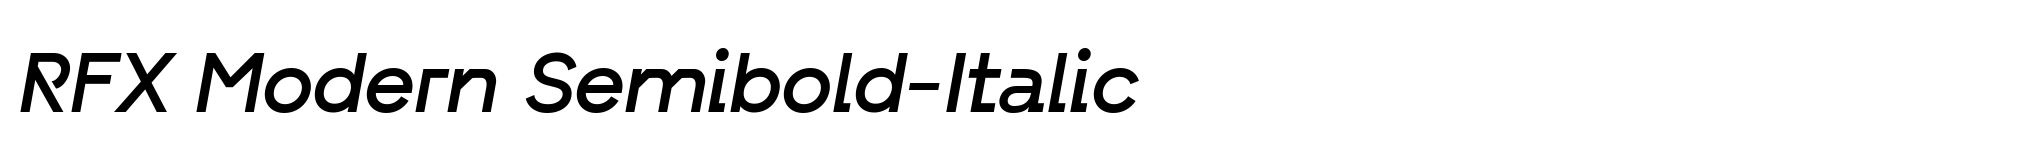 RFX Modern Semibold-Italic image